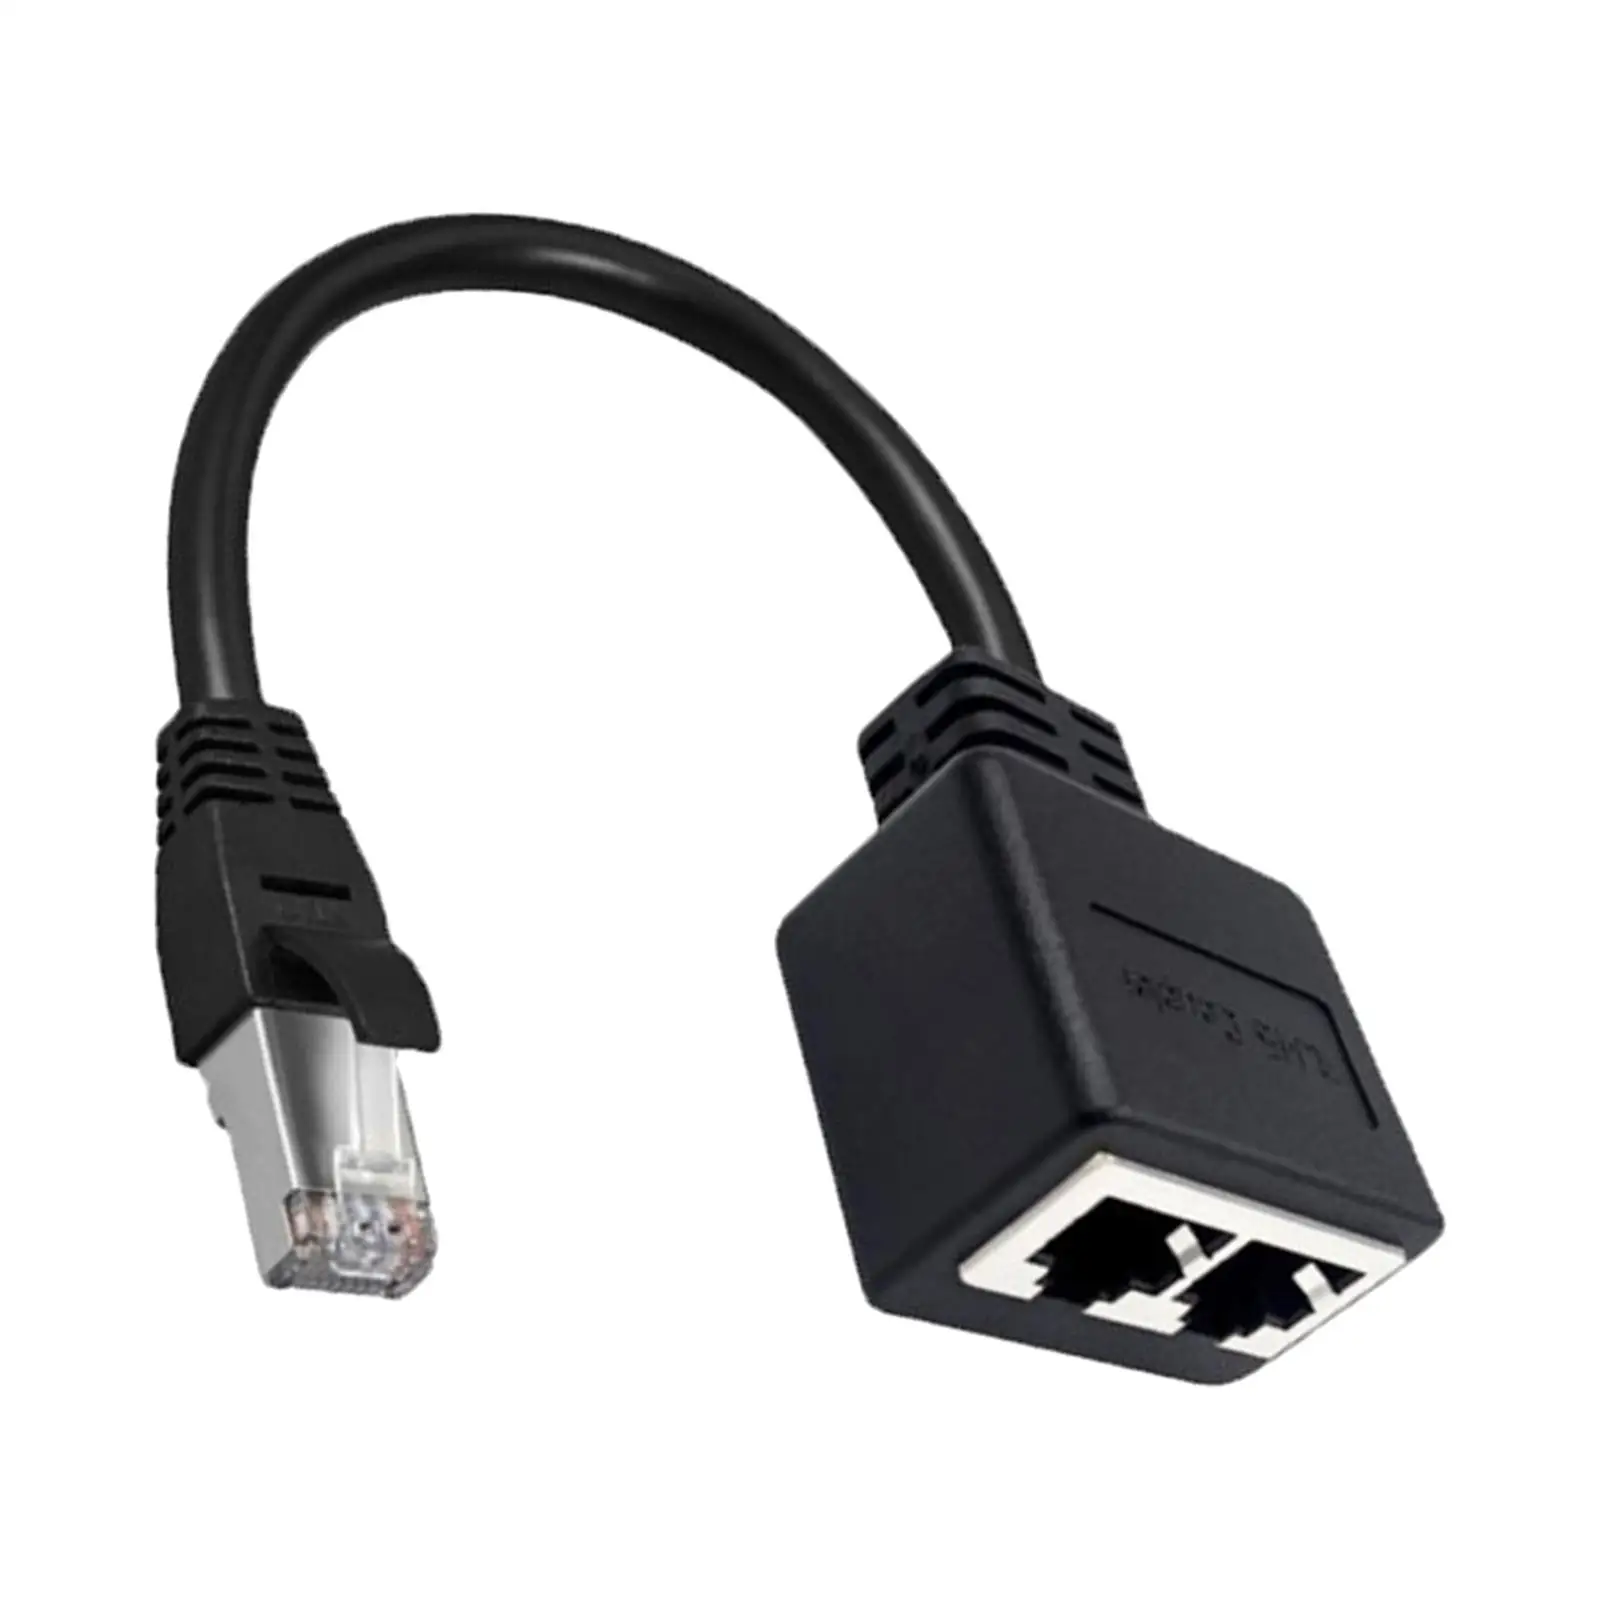 Lan Ethernet Splitter Cable LAN Ethernet Splitter Adapter Cable for Cat7/6/5/5E